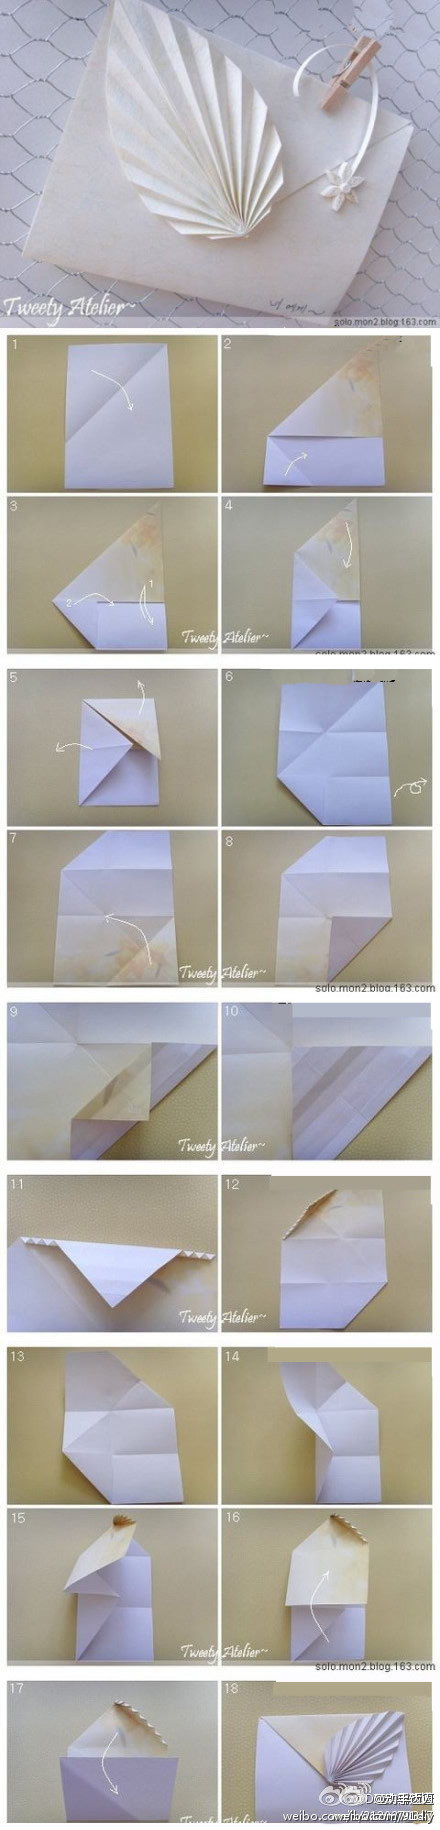 【教你折带一片叶子的信封】这个信封漂亮不?想不想自己动手折一个?